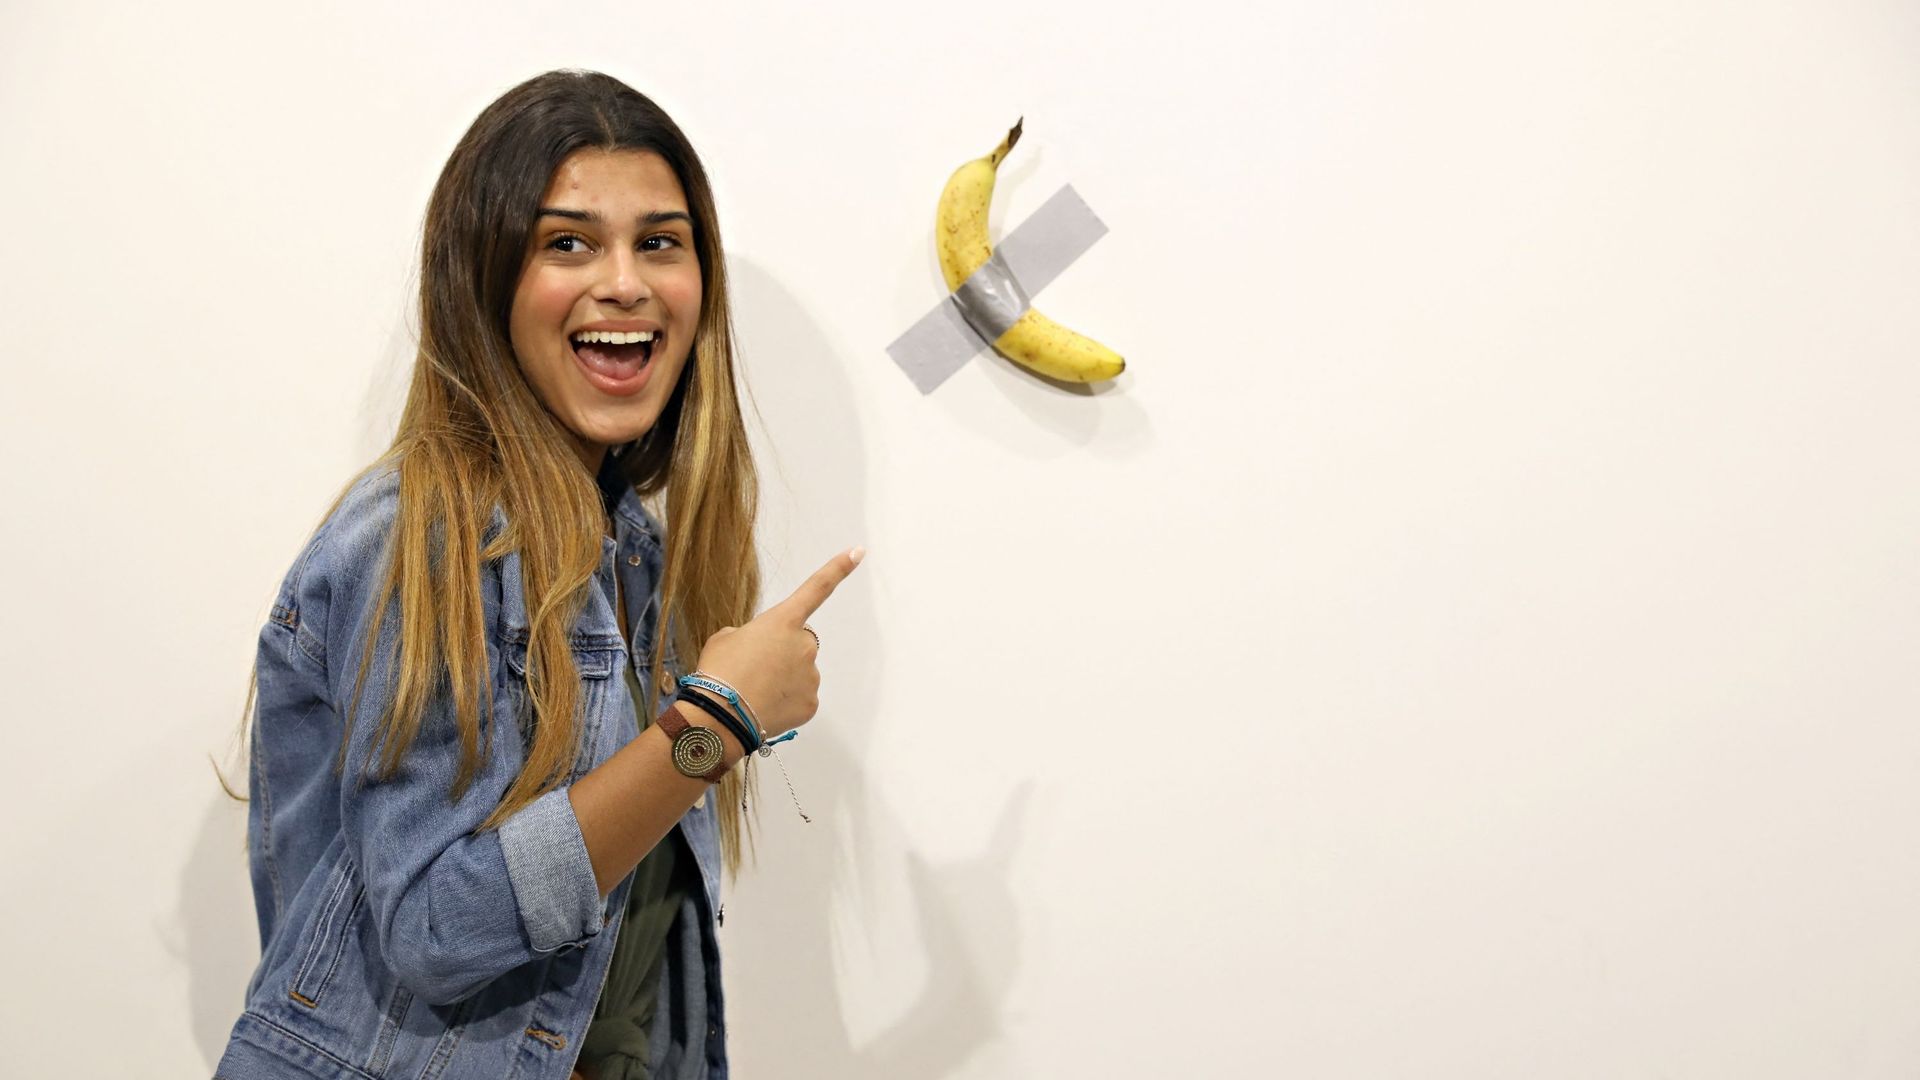 Une visiteuse de la foire Art Basel Miami 2019 pose devant la banane scotchée de Maurizio Cattelan, une oeuvre vendue 120.000 $